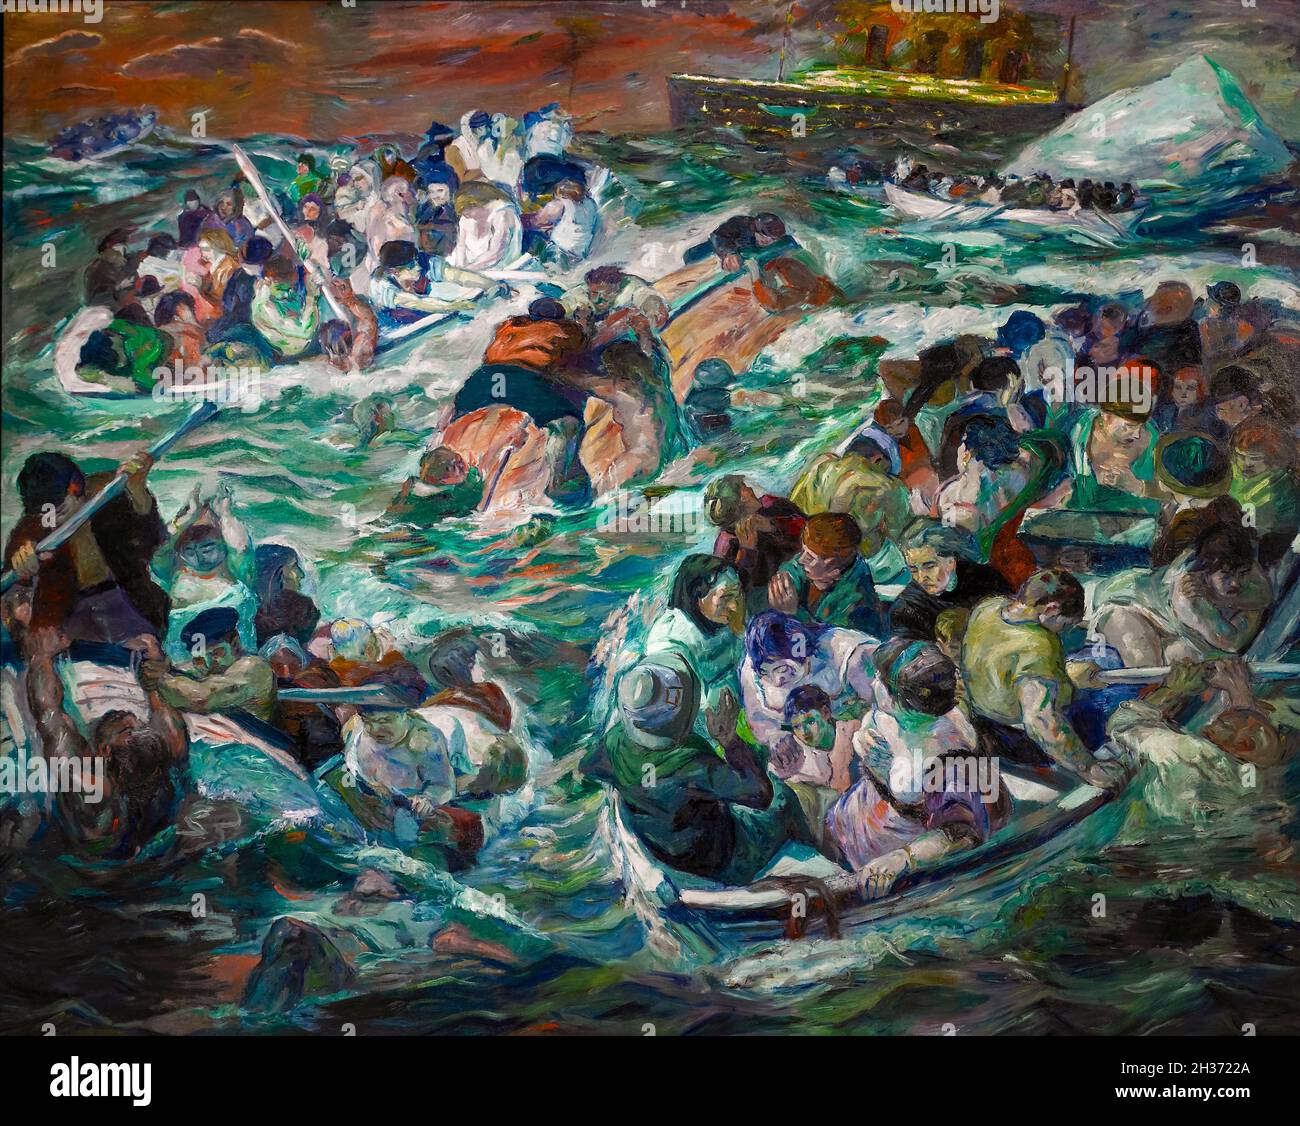 Le naufrage du Titanic, peinture de Max Beckmann, 1912-1913 Banque D'Images